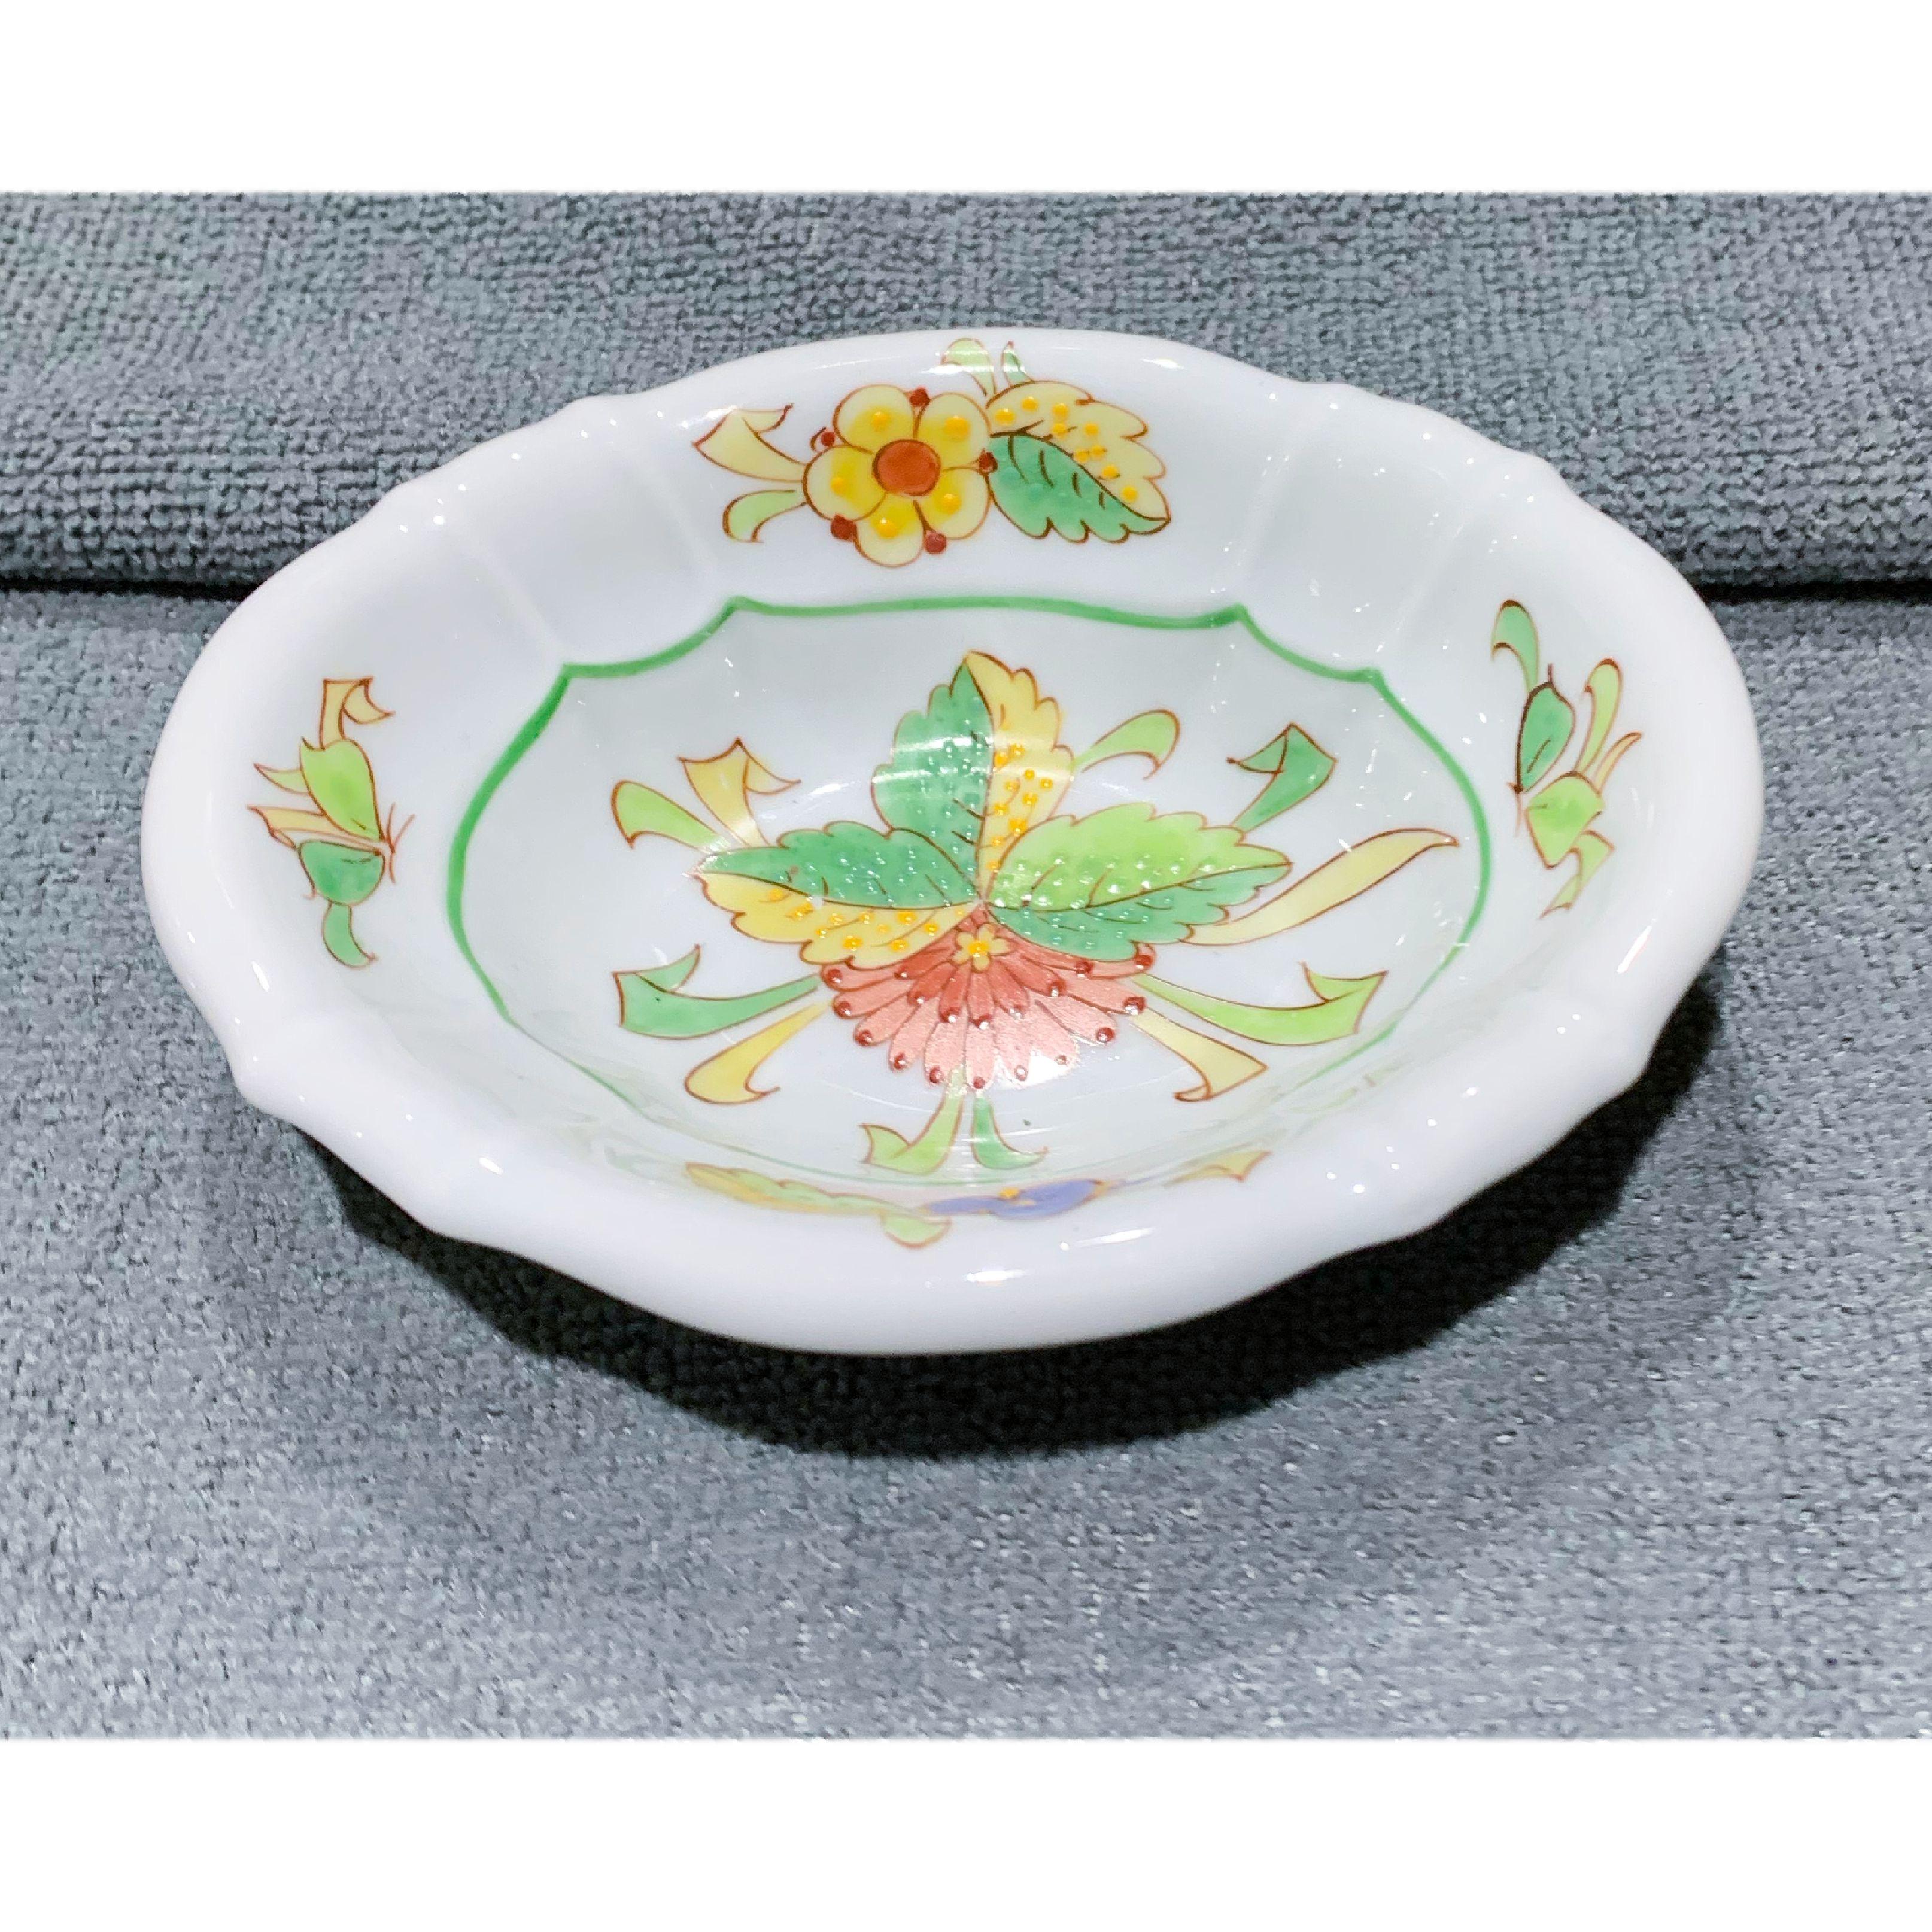 Vintage Sherle Wagner handbemalte Seifenschale aus Keramik mit Blumenstrauß. Gläsernes Porzellan. Handbemaltes und handdekoriertes Objekt. Das Muster 